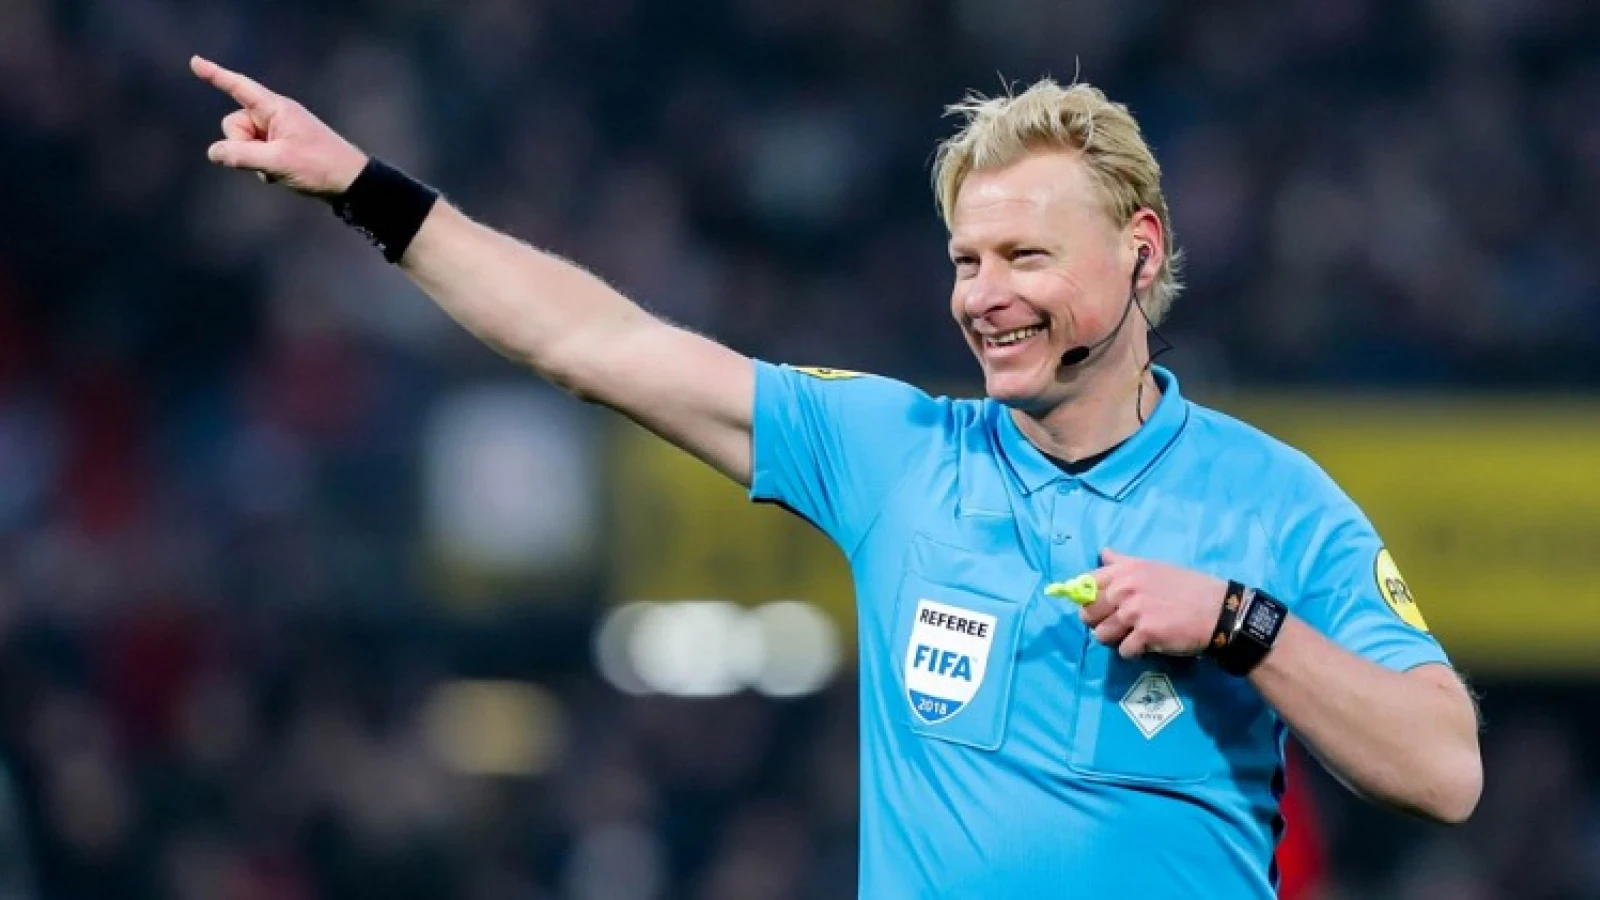 Kevin Blom scheidsrechter tijdens wedstrijd tussen Feyenoord en ADO Den Haag